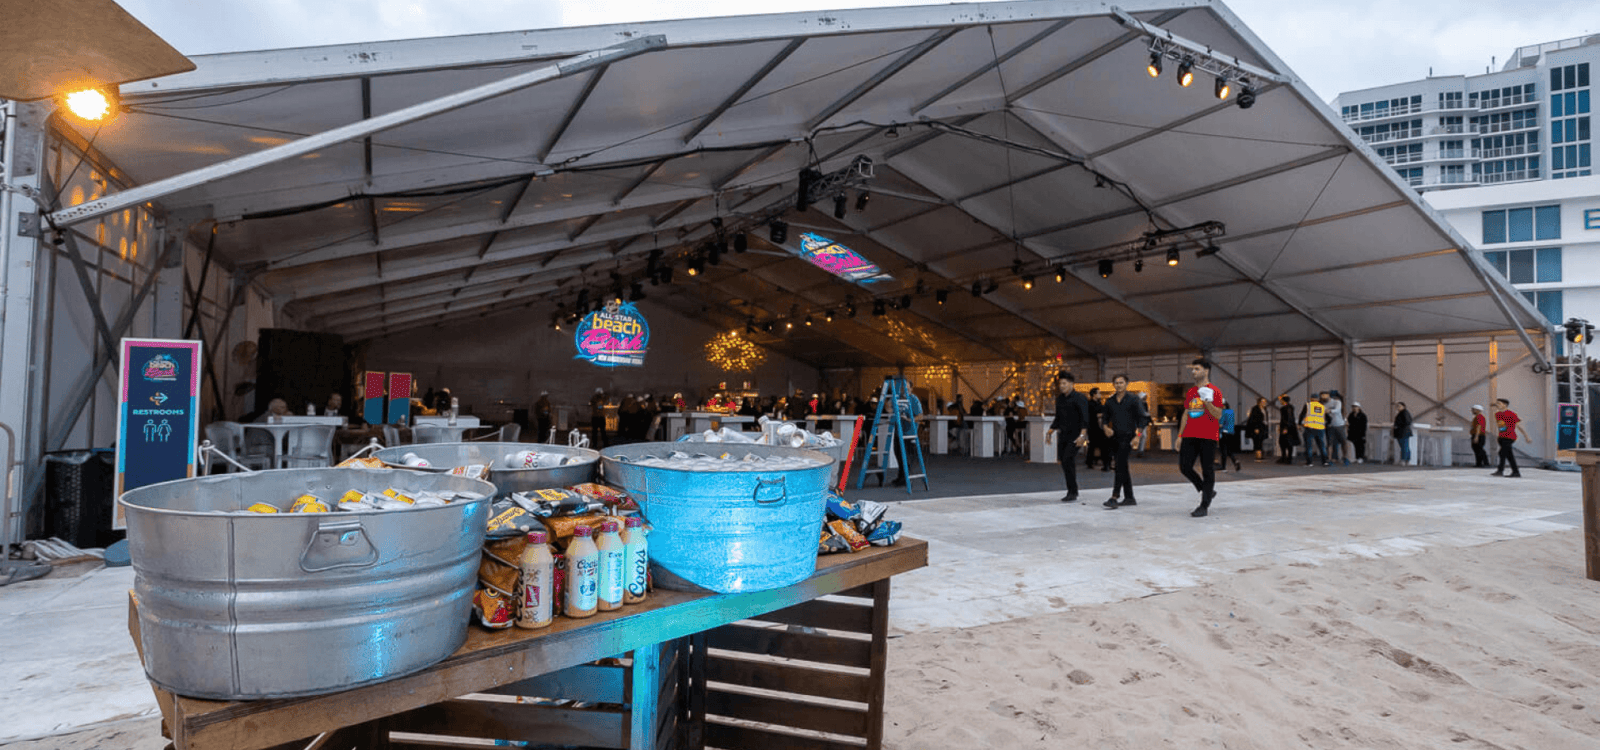 Eventure - Tente NHL All Star 2023 avec stands de nourriture et open bar sur la plage